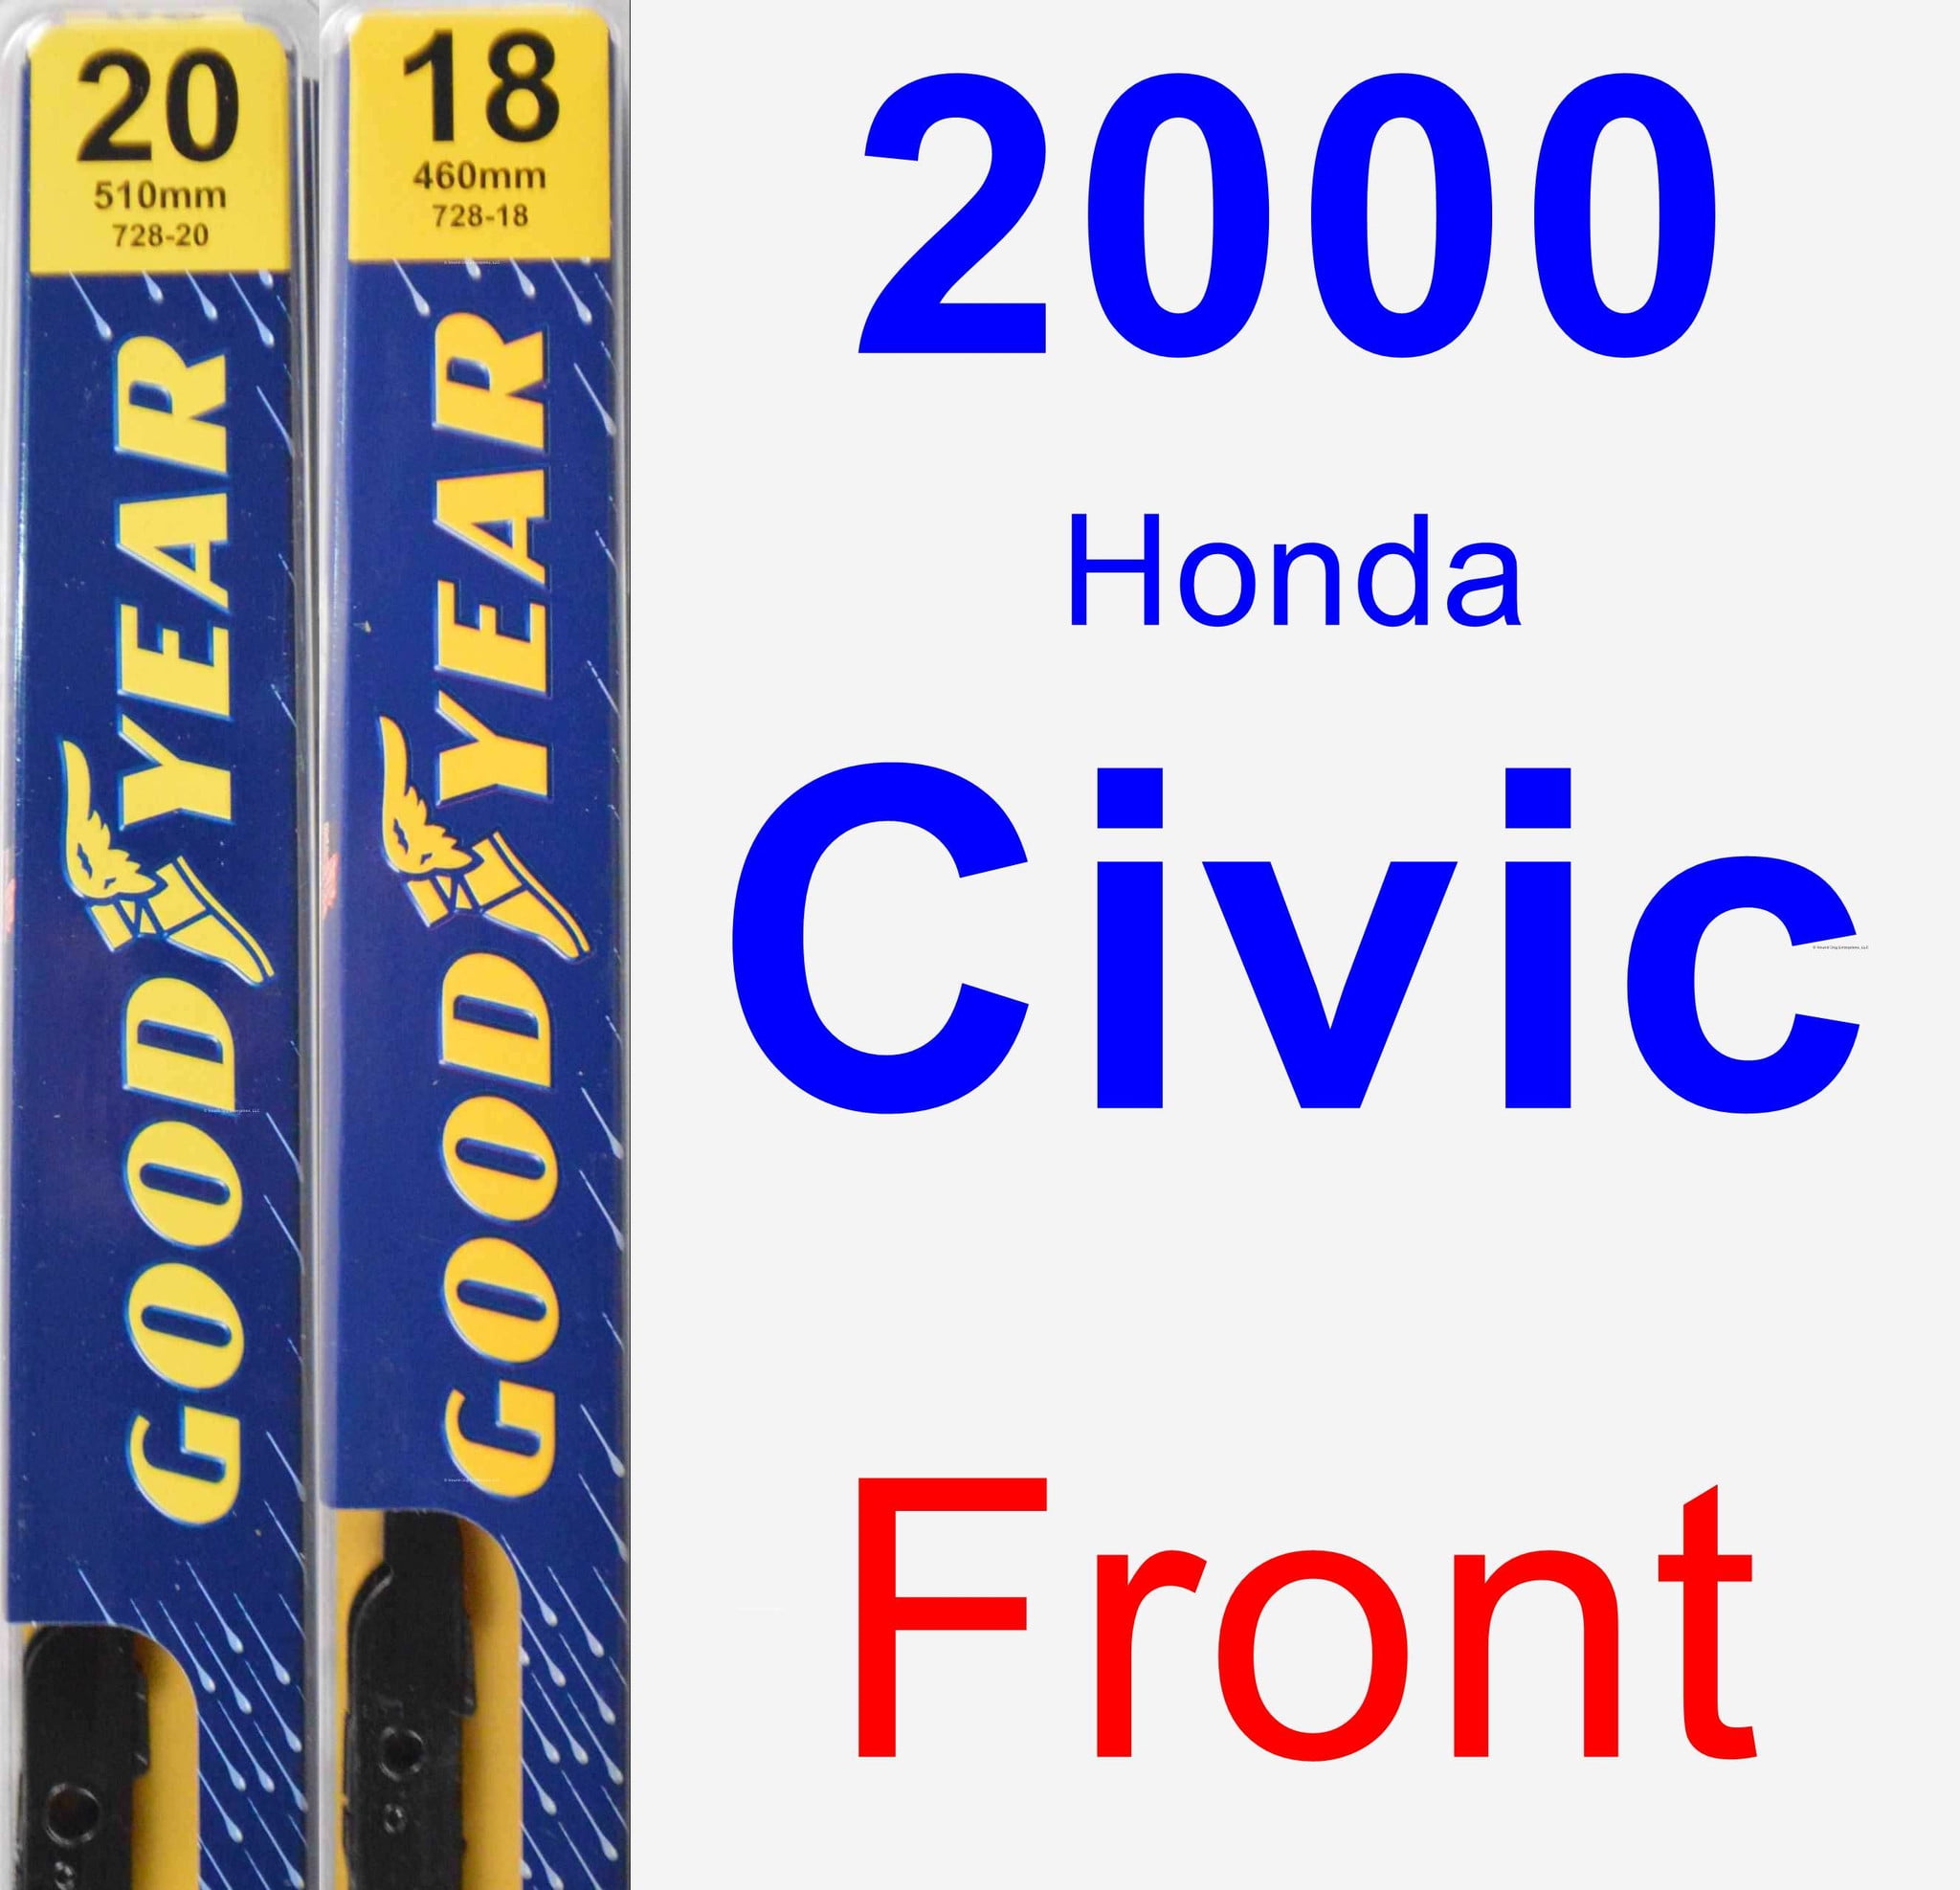 CIVIC Hatchback Feb 2001 to Sep 2005 Windscreen Wiper Blade Kit 2 x Blades 